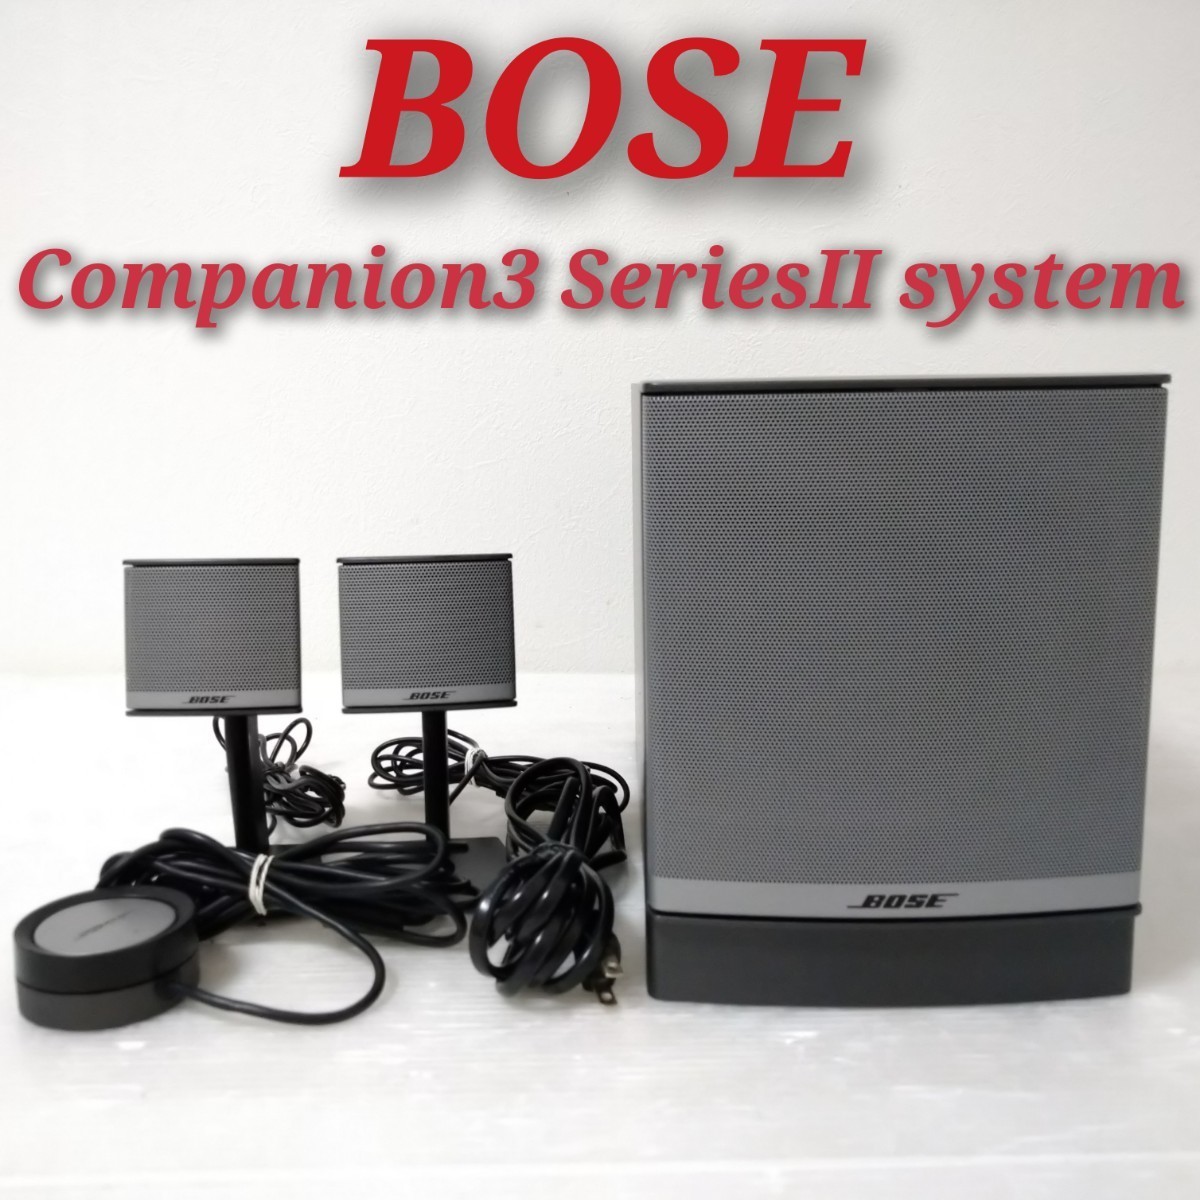 BOSE Companion 3 Series II system ボーズ PCスピーカー マルチ